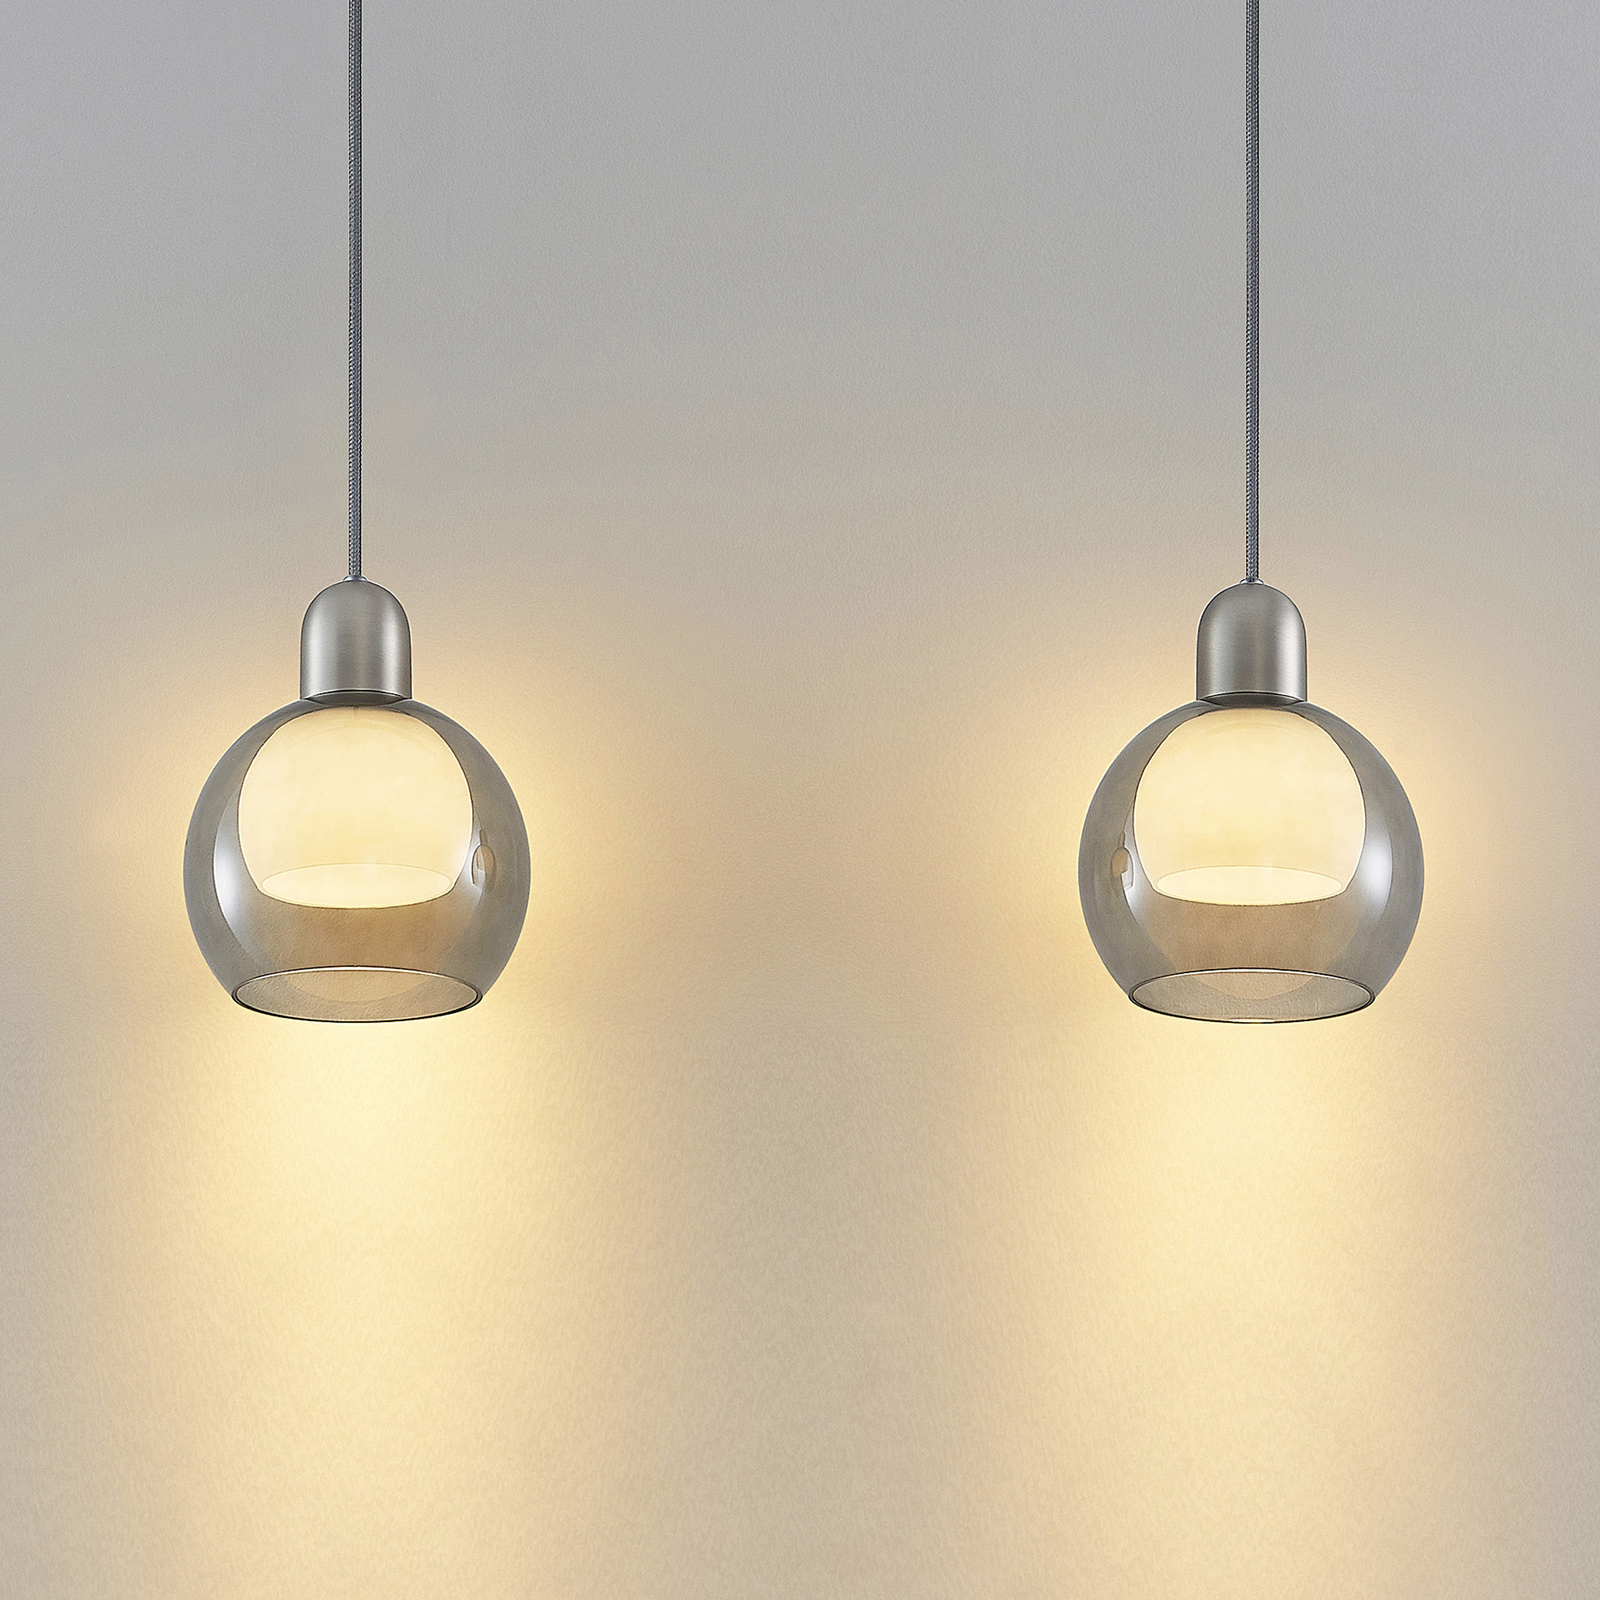 Lucande Kaiya pendant light, glass, two-bulb